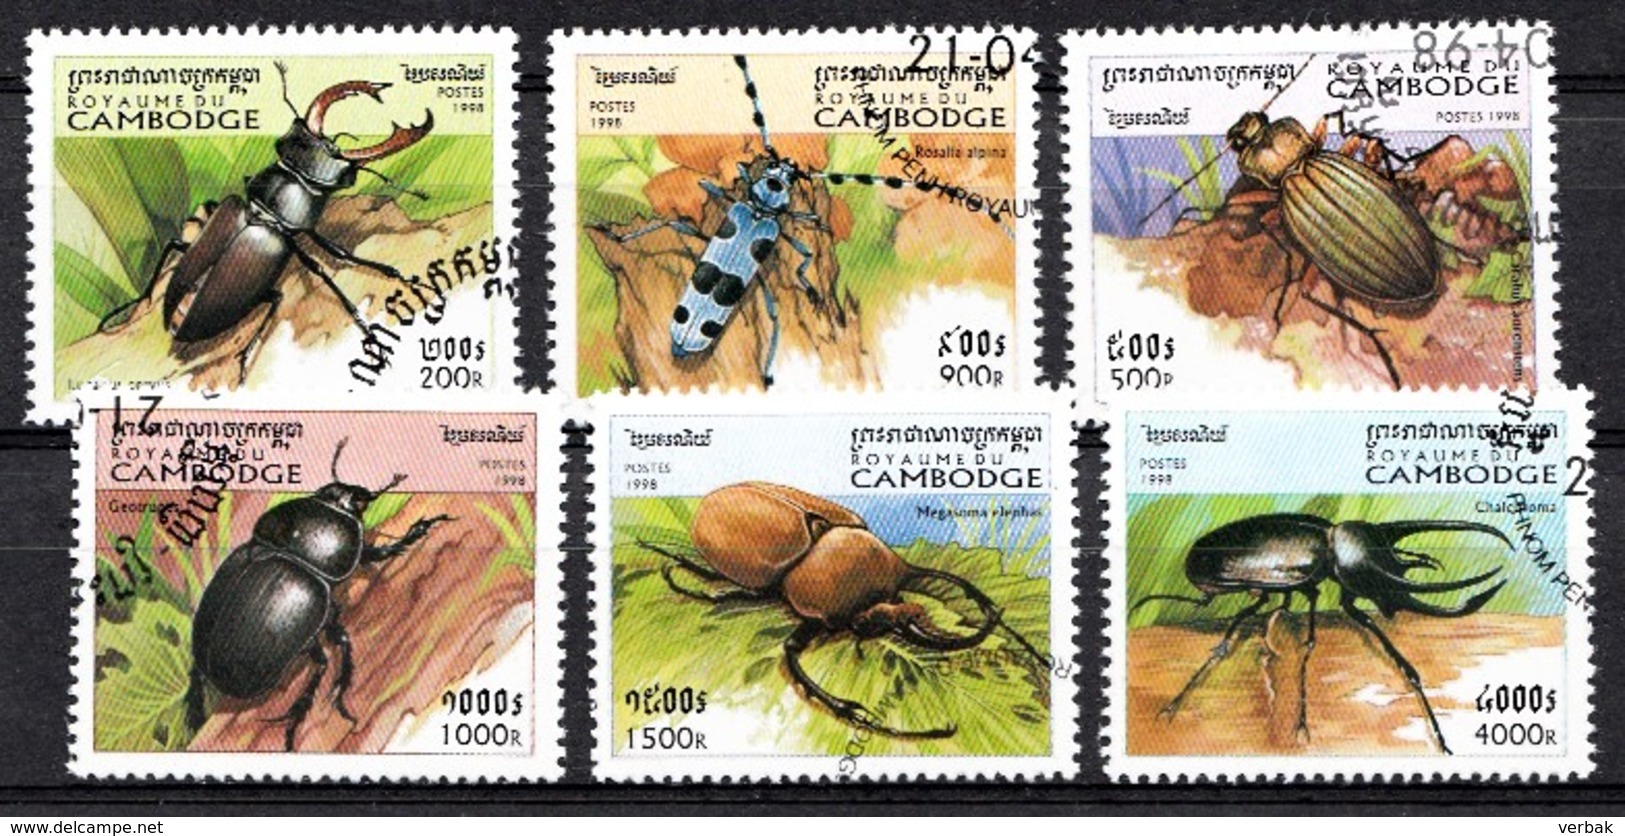 CAMBODJA 1998 MI.NR. 1821-1826 Käfer  USED / GEBRUIKT / OBLITERE 1994 - Cambodja